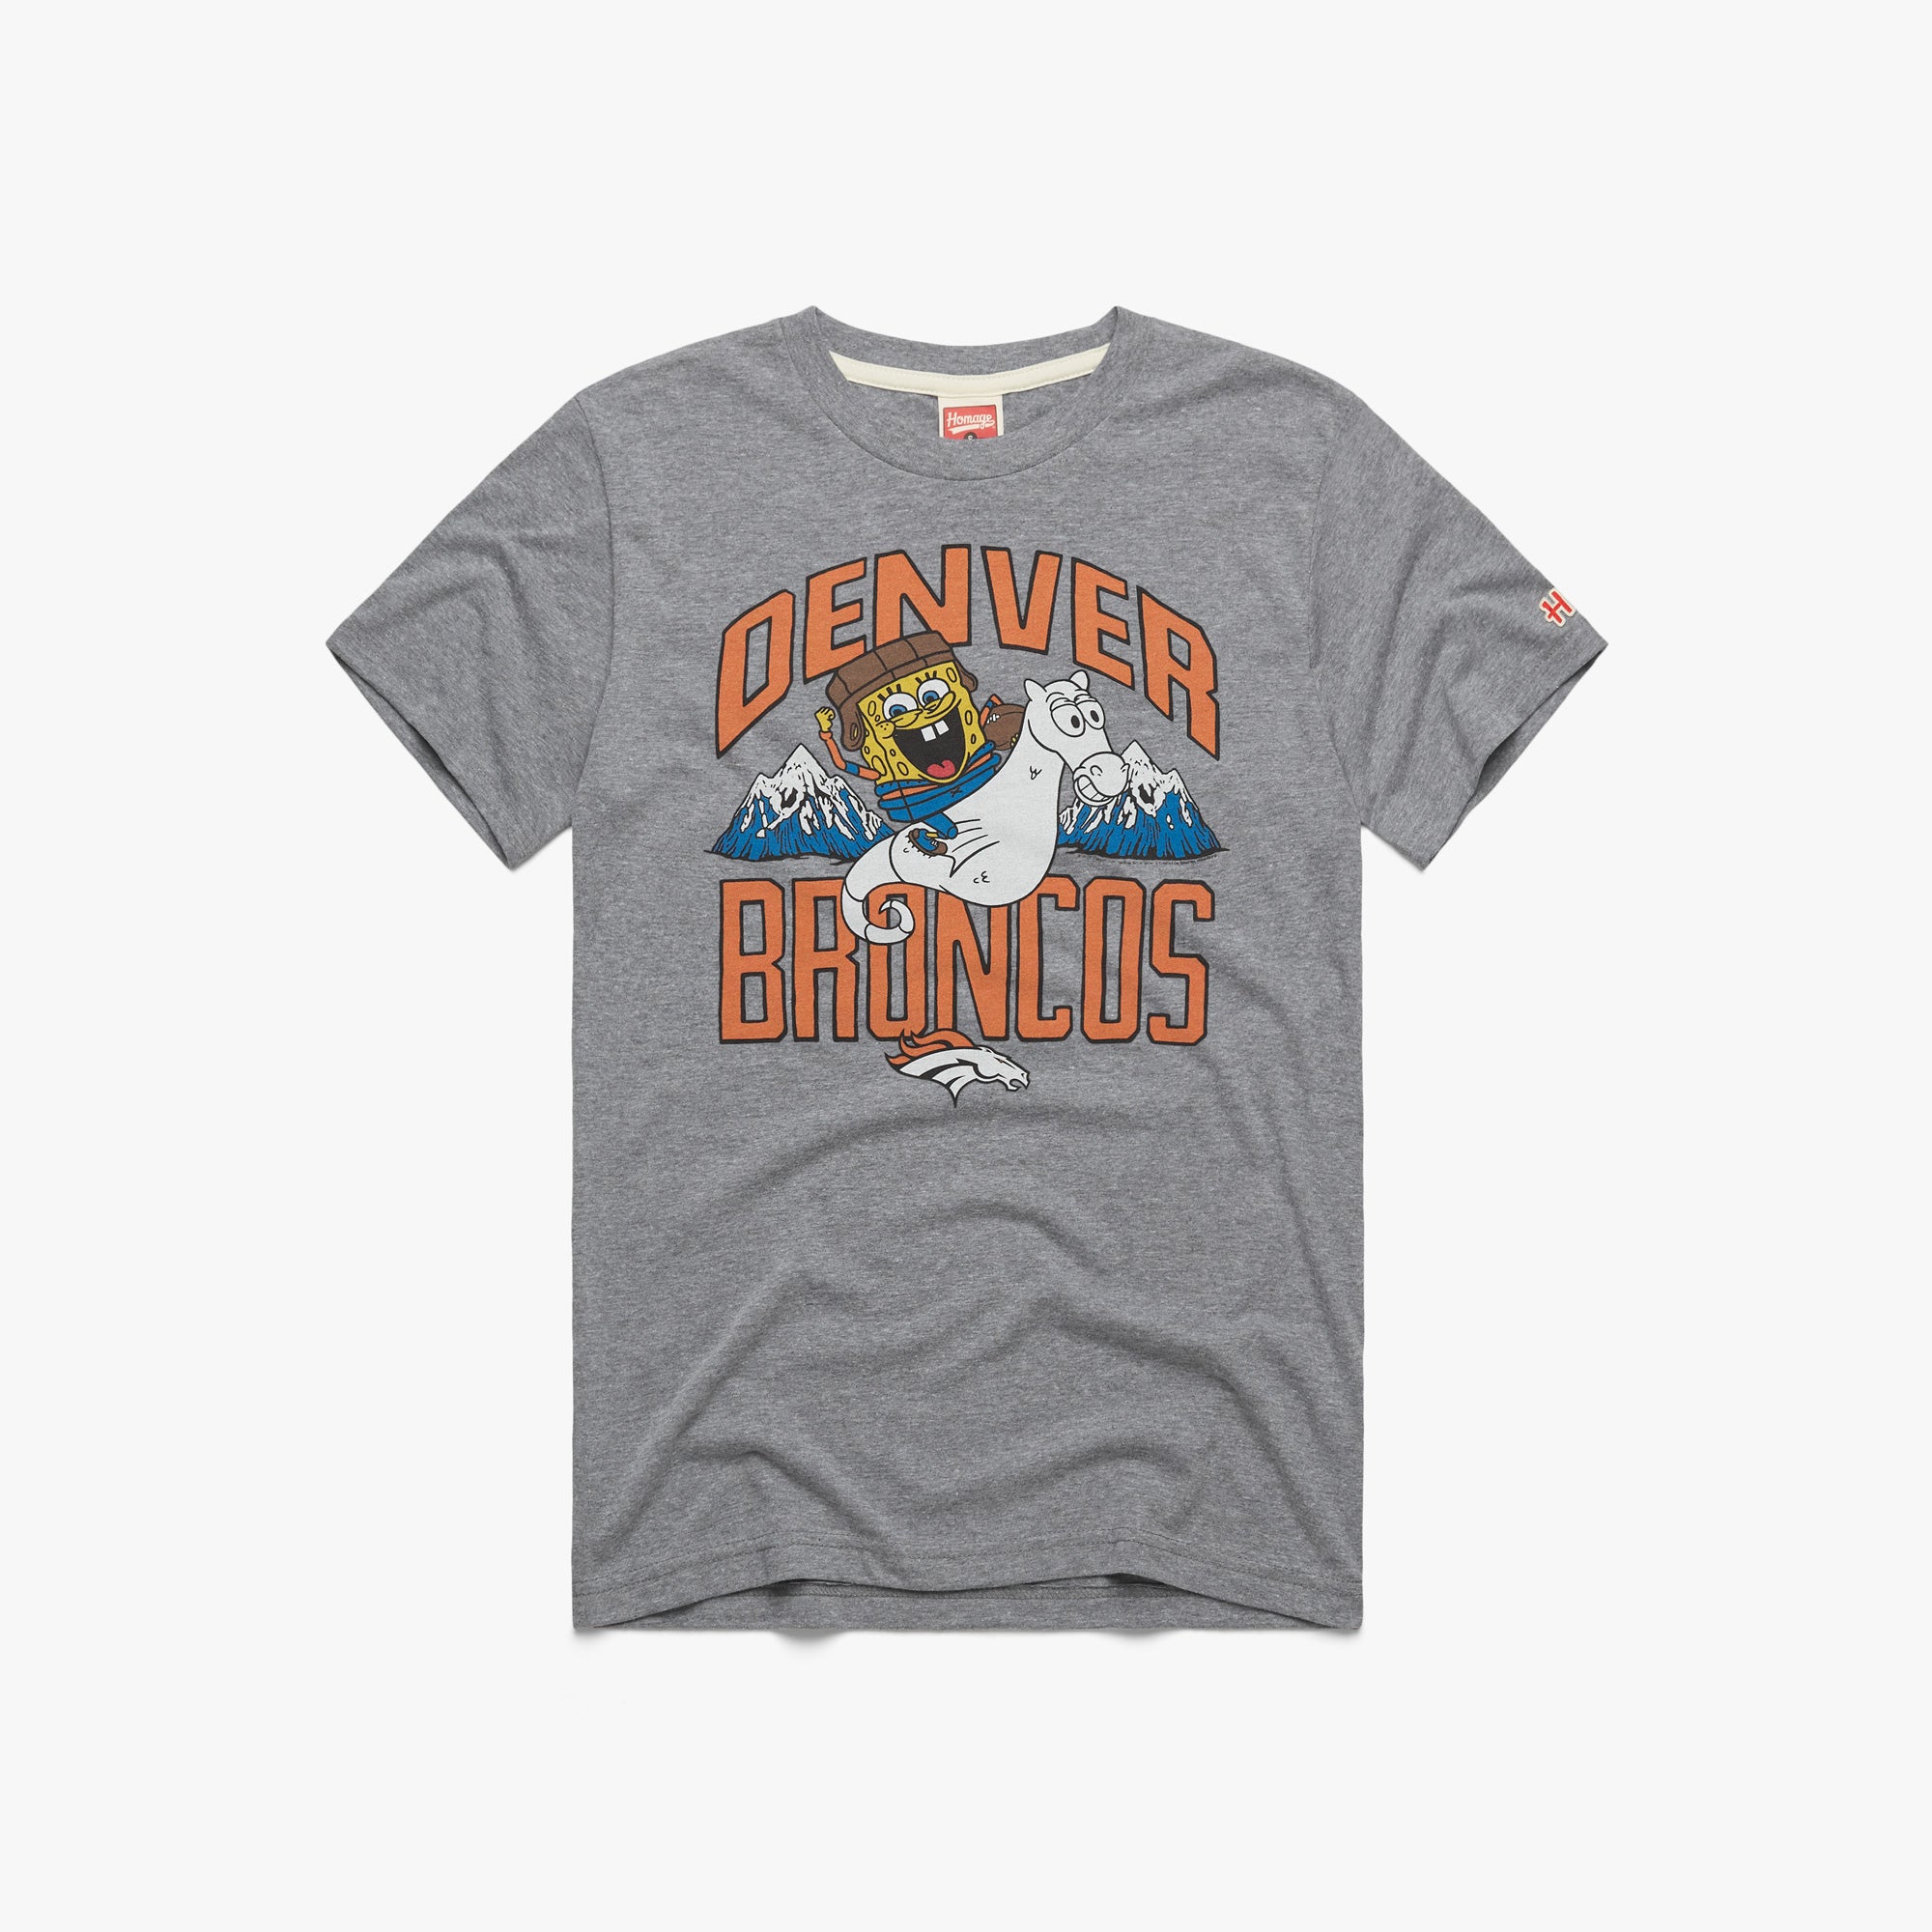 Spongebob x Denver Broncos T-Shirt from Homage. | Officially Licensed Vintage NFL Apparel from Homage Pro Shop.